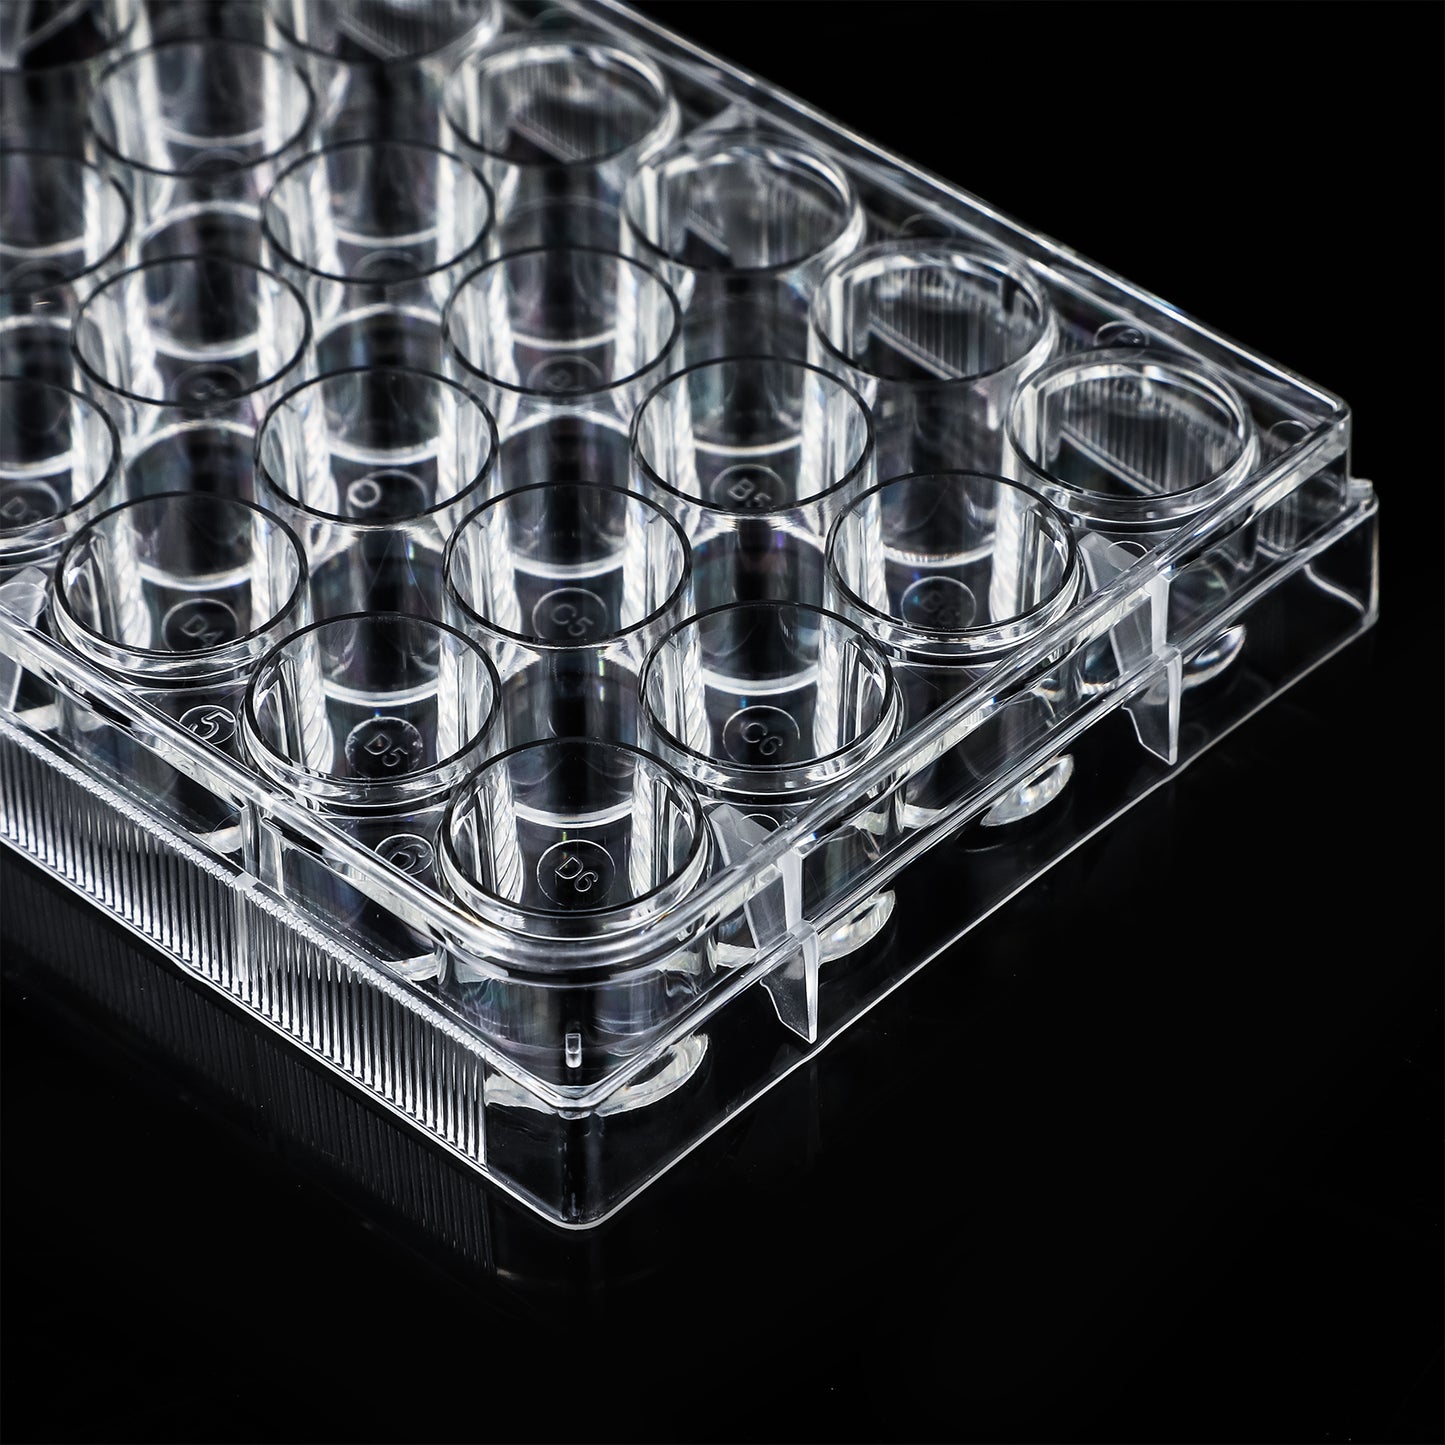 Cell Culture Plate - Four E's USA (A Four E's Scientific Company)